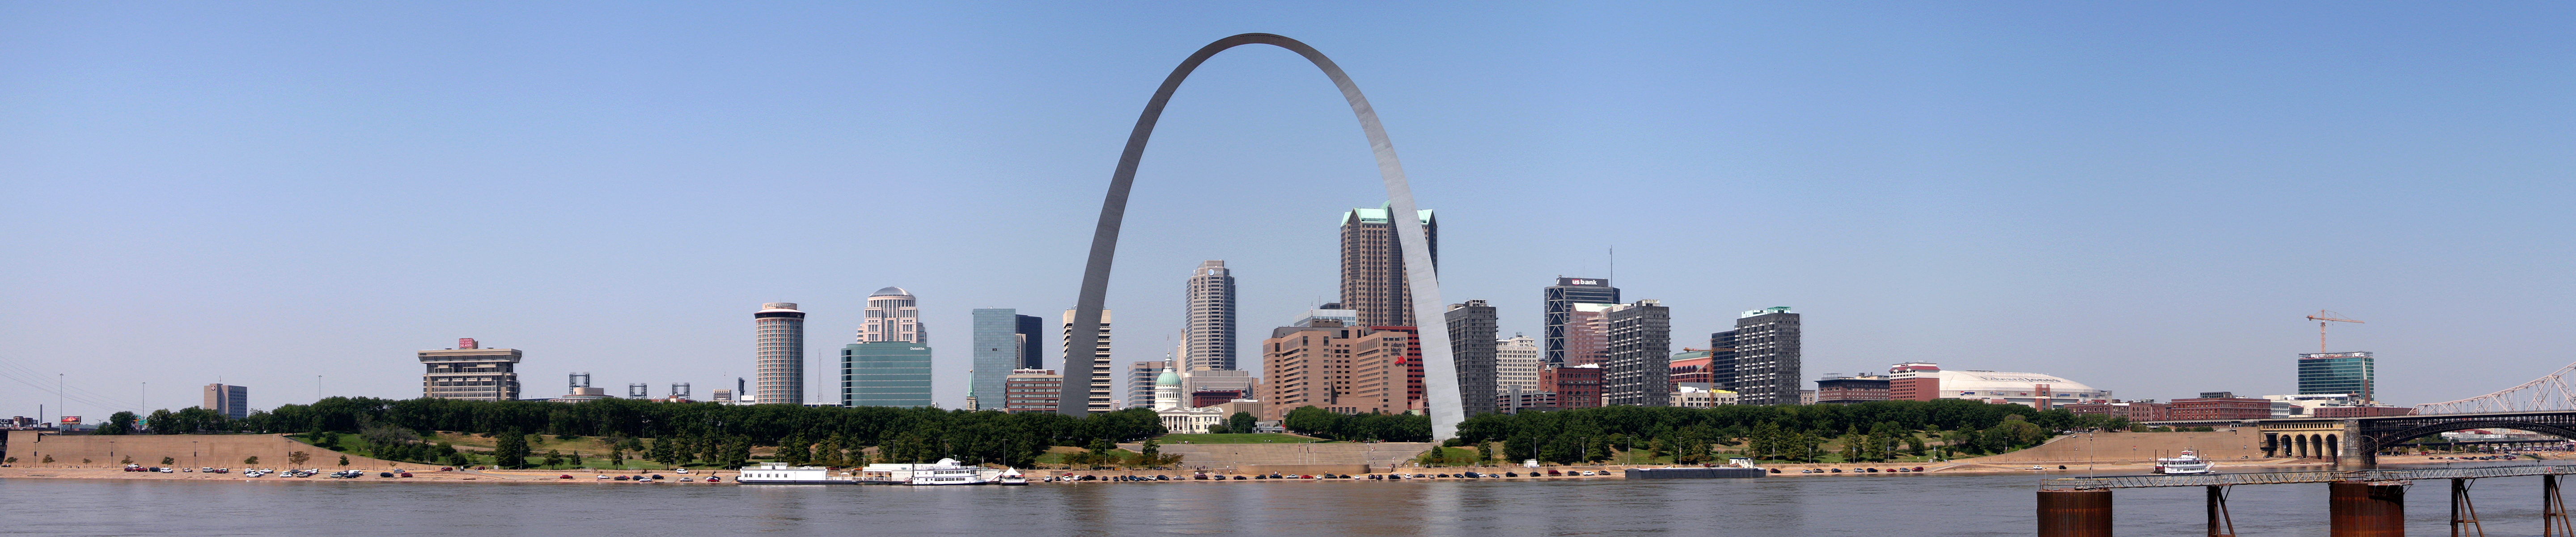 St Louis Gateway Arch Missouri Wallpaper Background